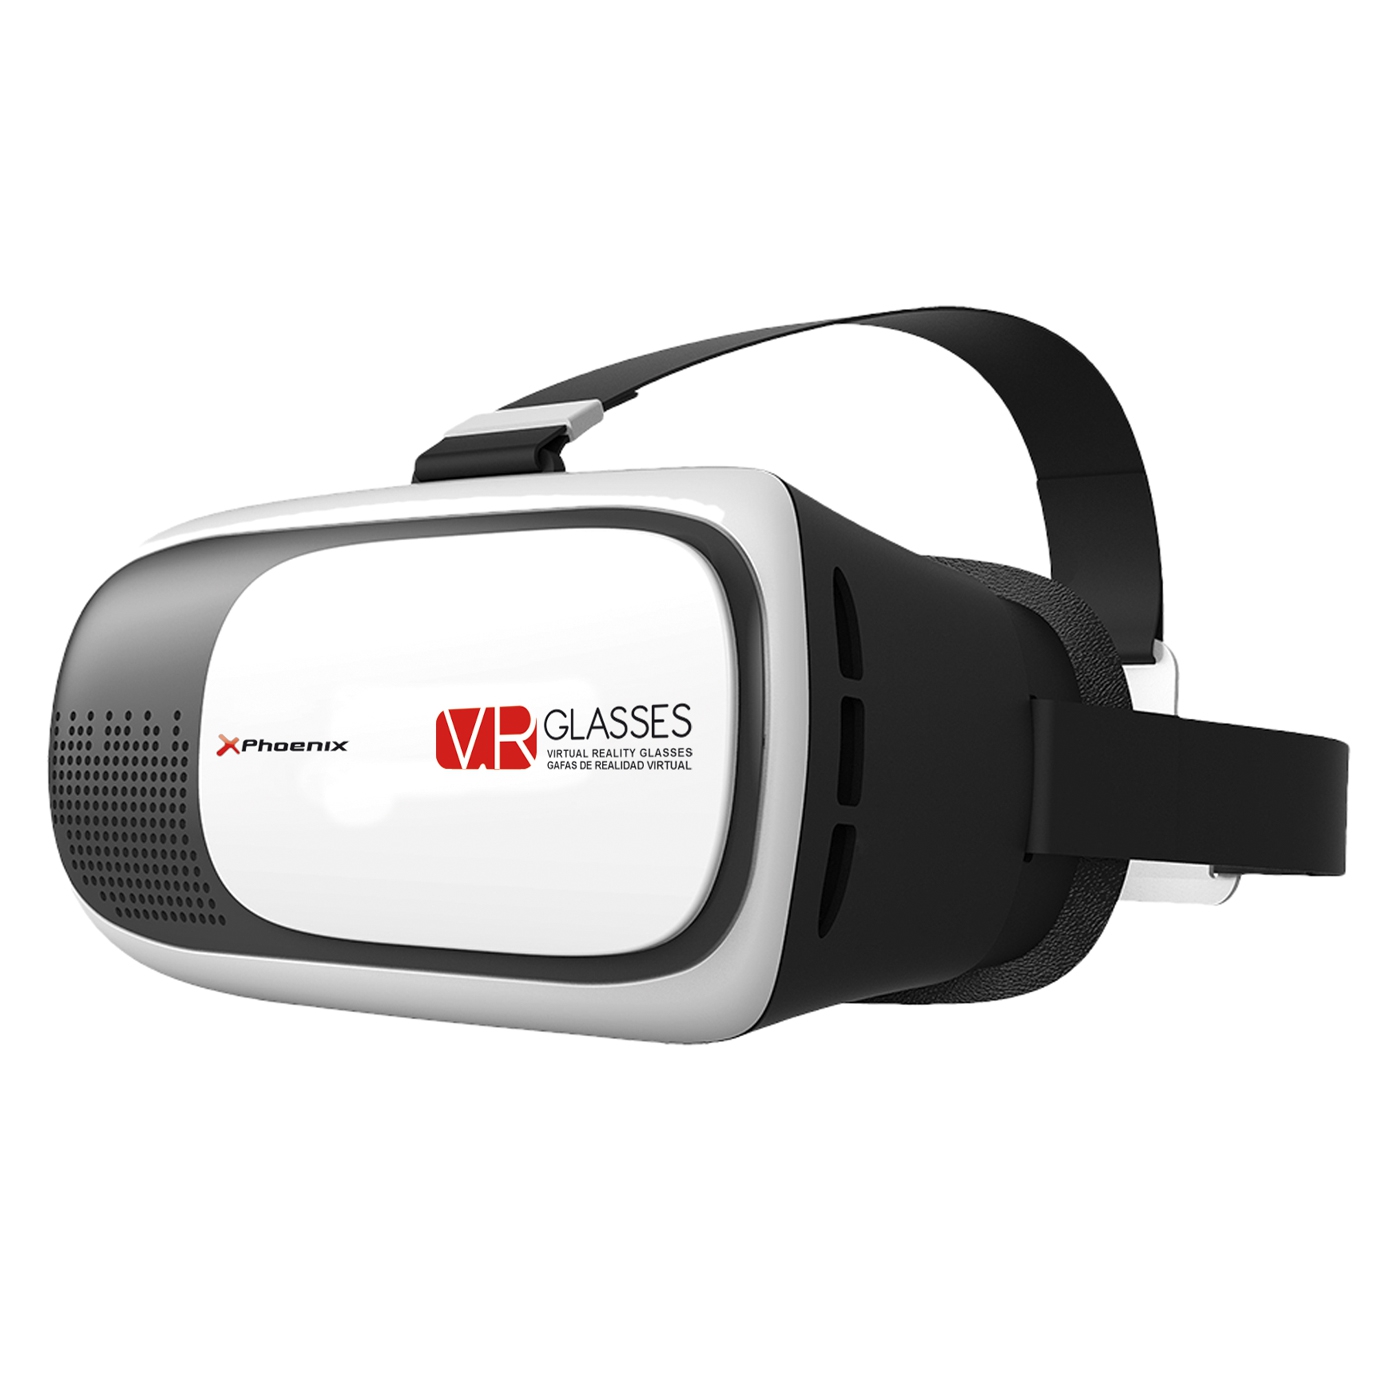 Gafas 3d vr de realidad virtual universales phoenix - lentes de resina optica - valido para telefono smartphone hasta 6pulgadas -  cinta elastica ajustable para sujeccion - distancia focal regulable blanco